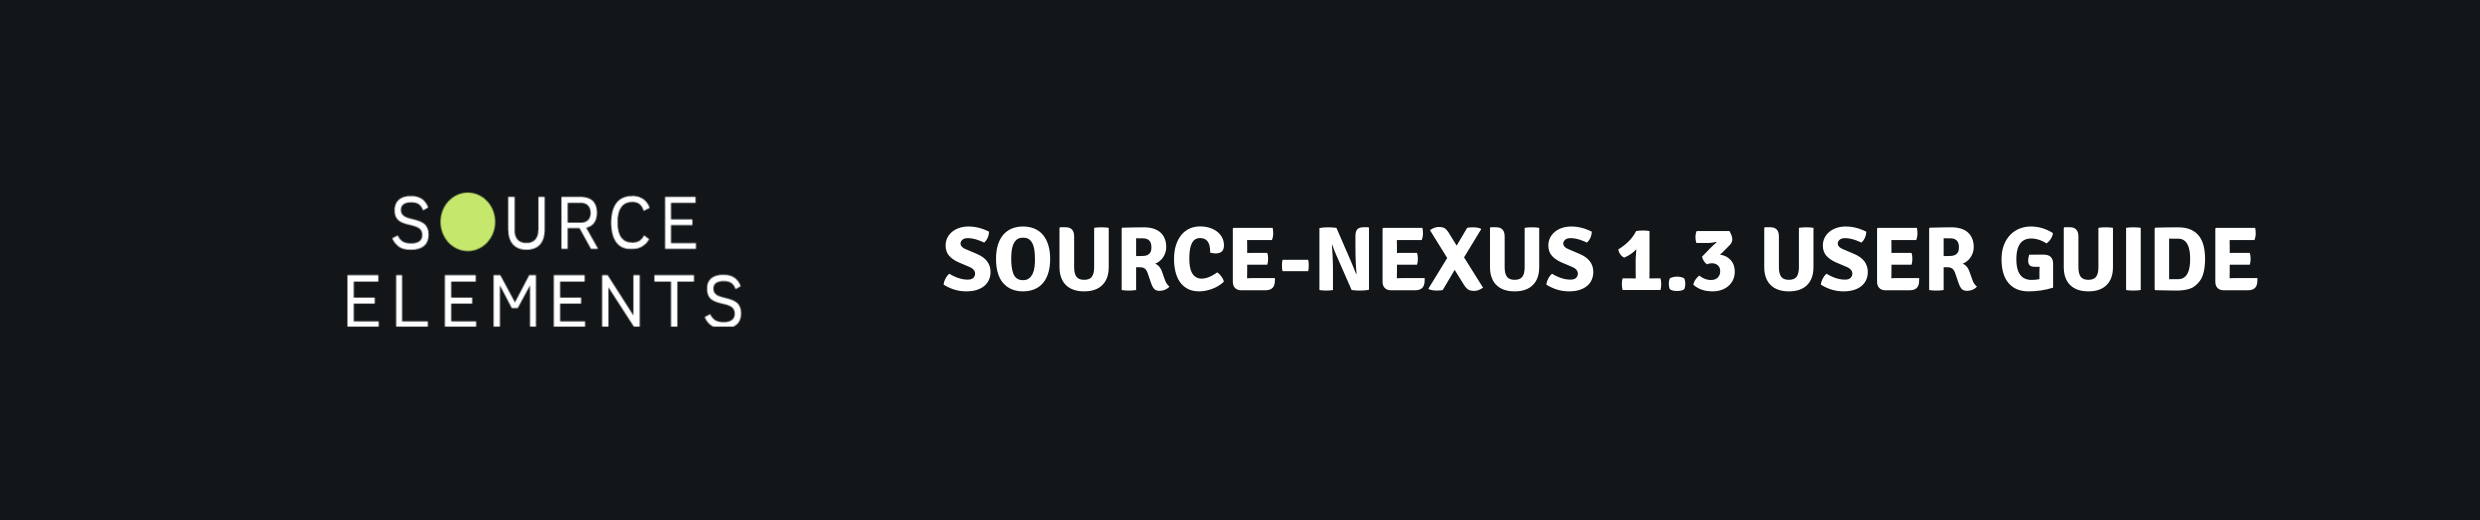 Source-Nexus 1.3 User Guide